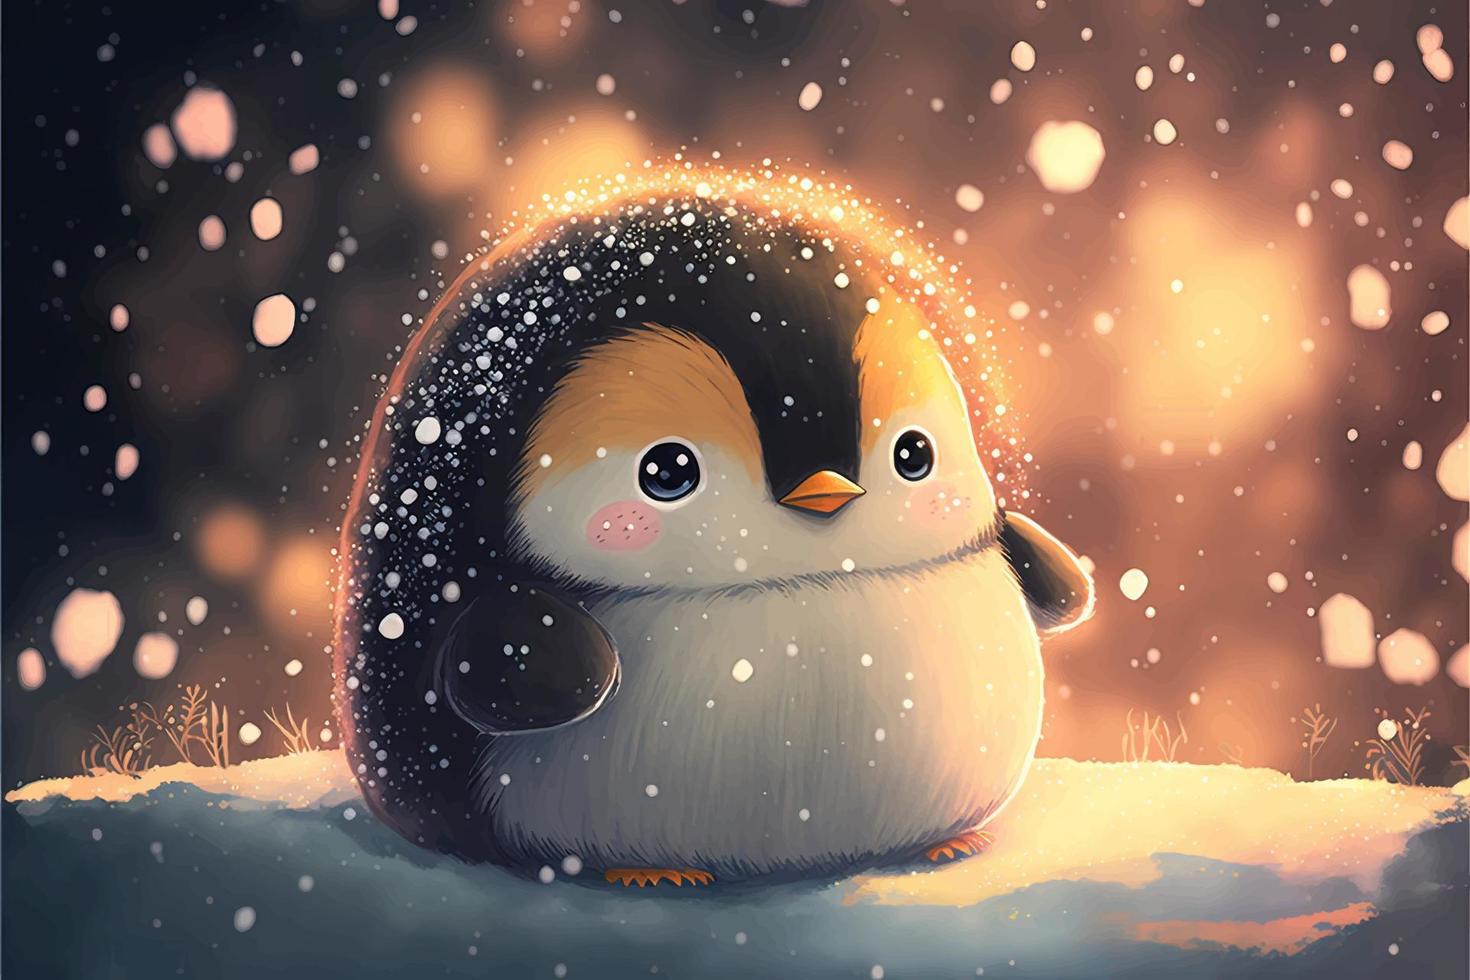 um pinguim bebê adorável senta-se na neve do inverno durante o pôr do sol. vetor